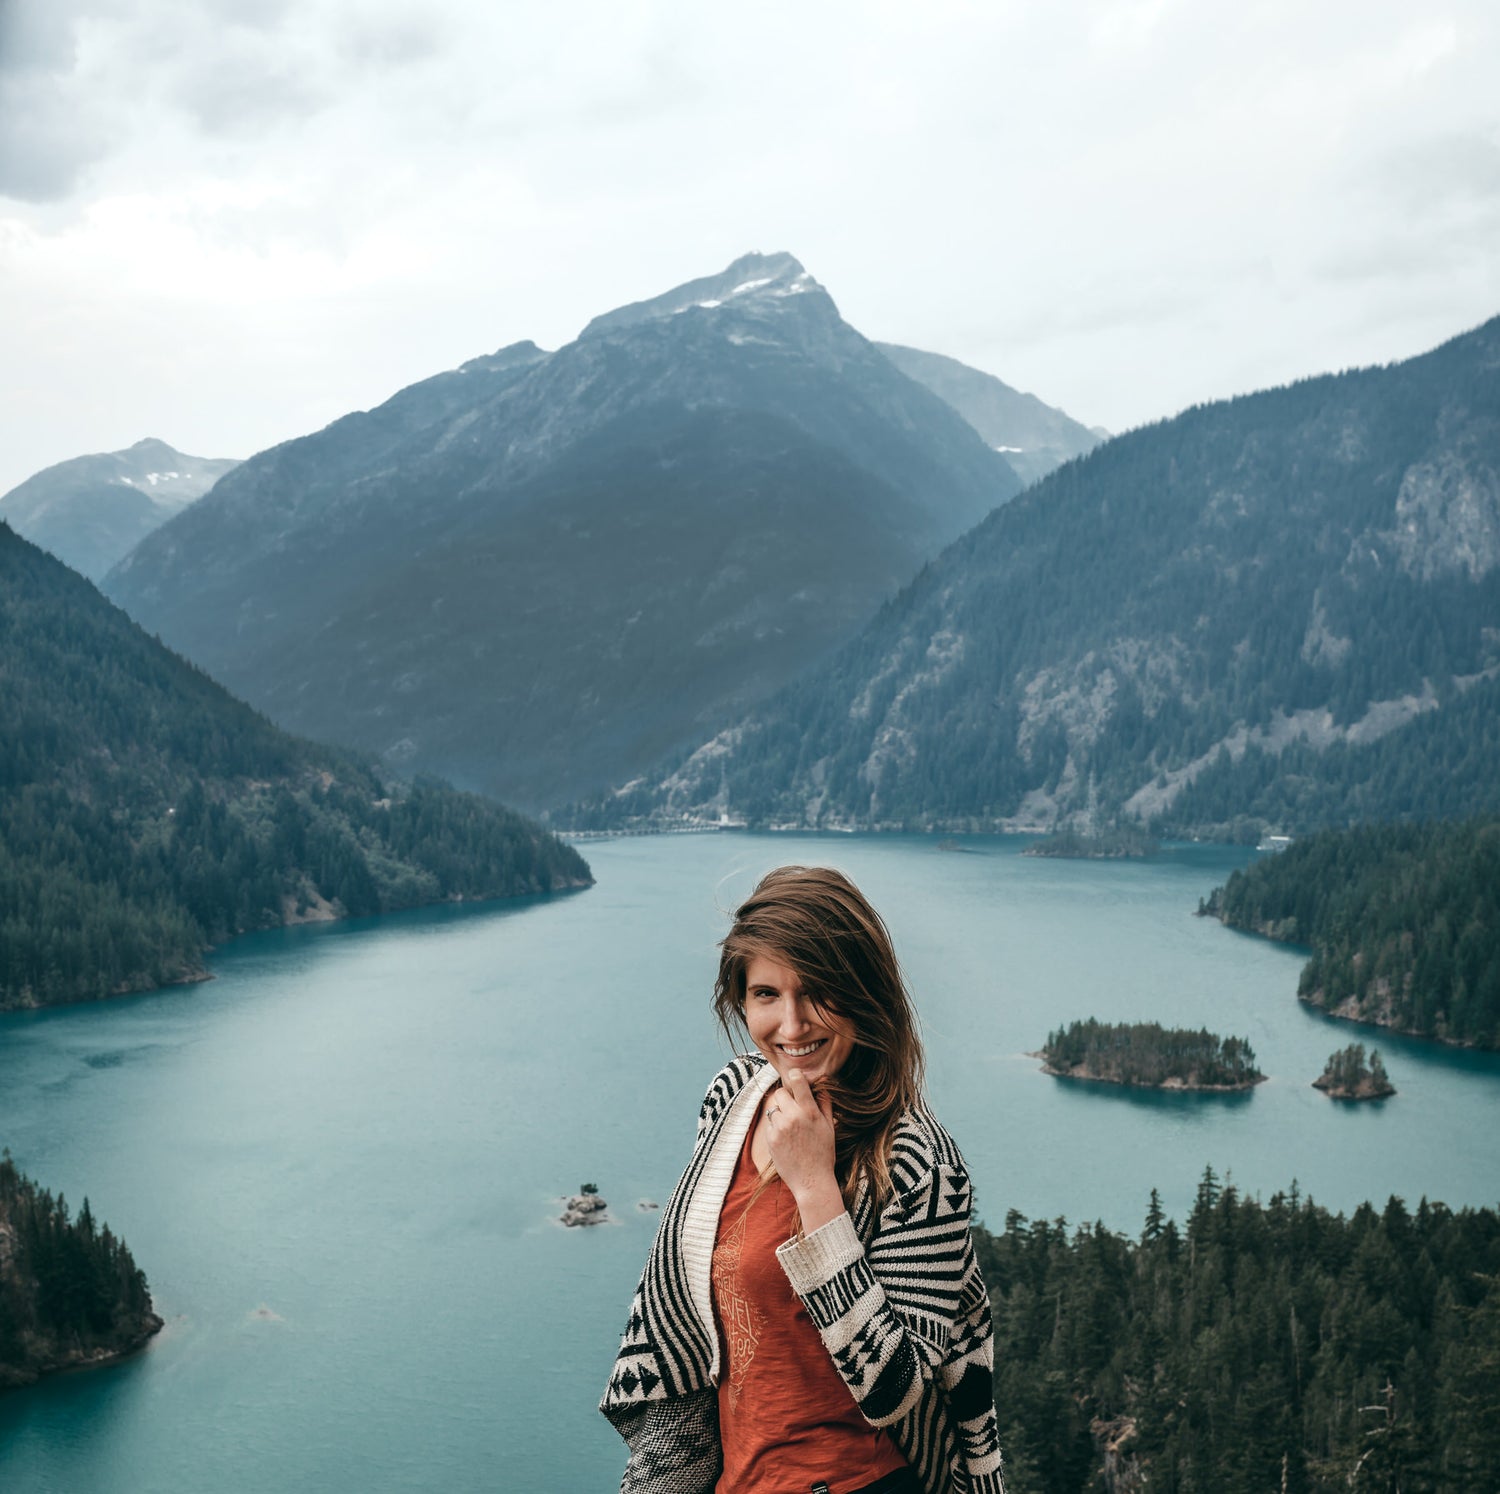 Kula Adventure Series - Meet Marie Vanderpool, Adventure Elopement Photographer